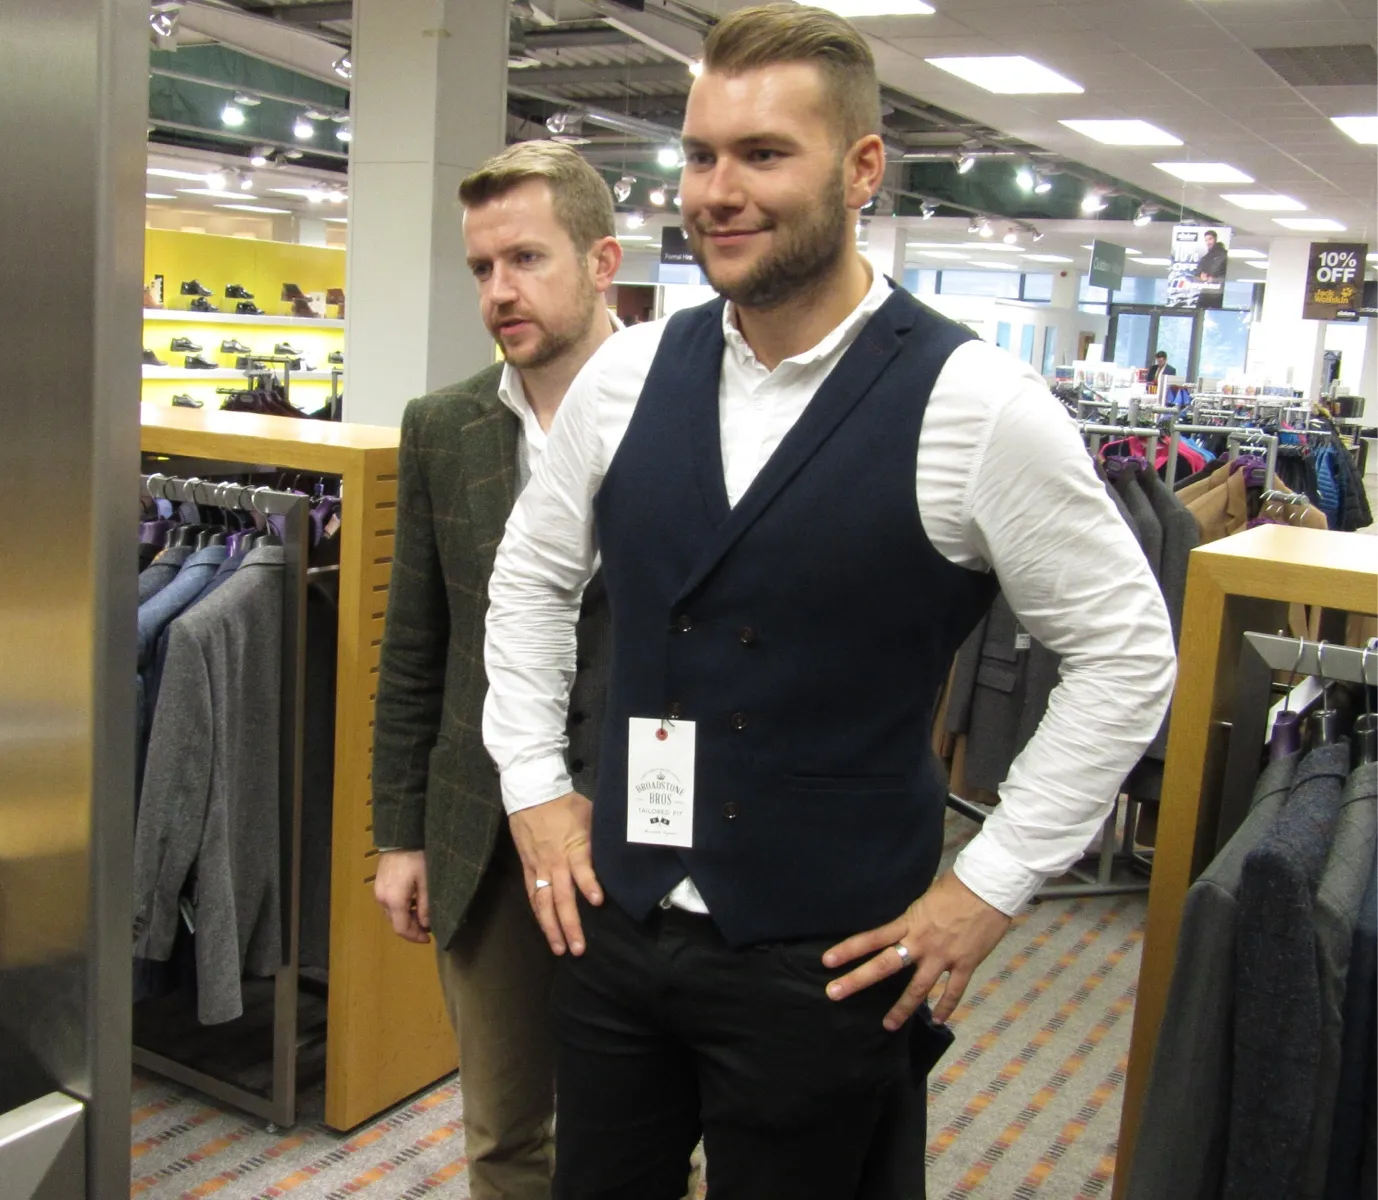 Rupert styling a gentleman client in a department store.